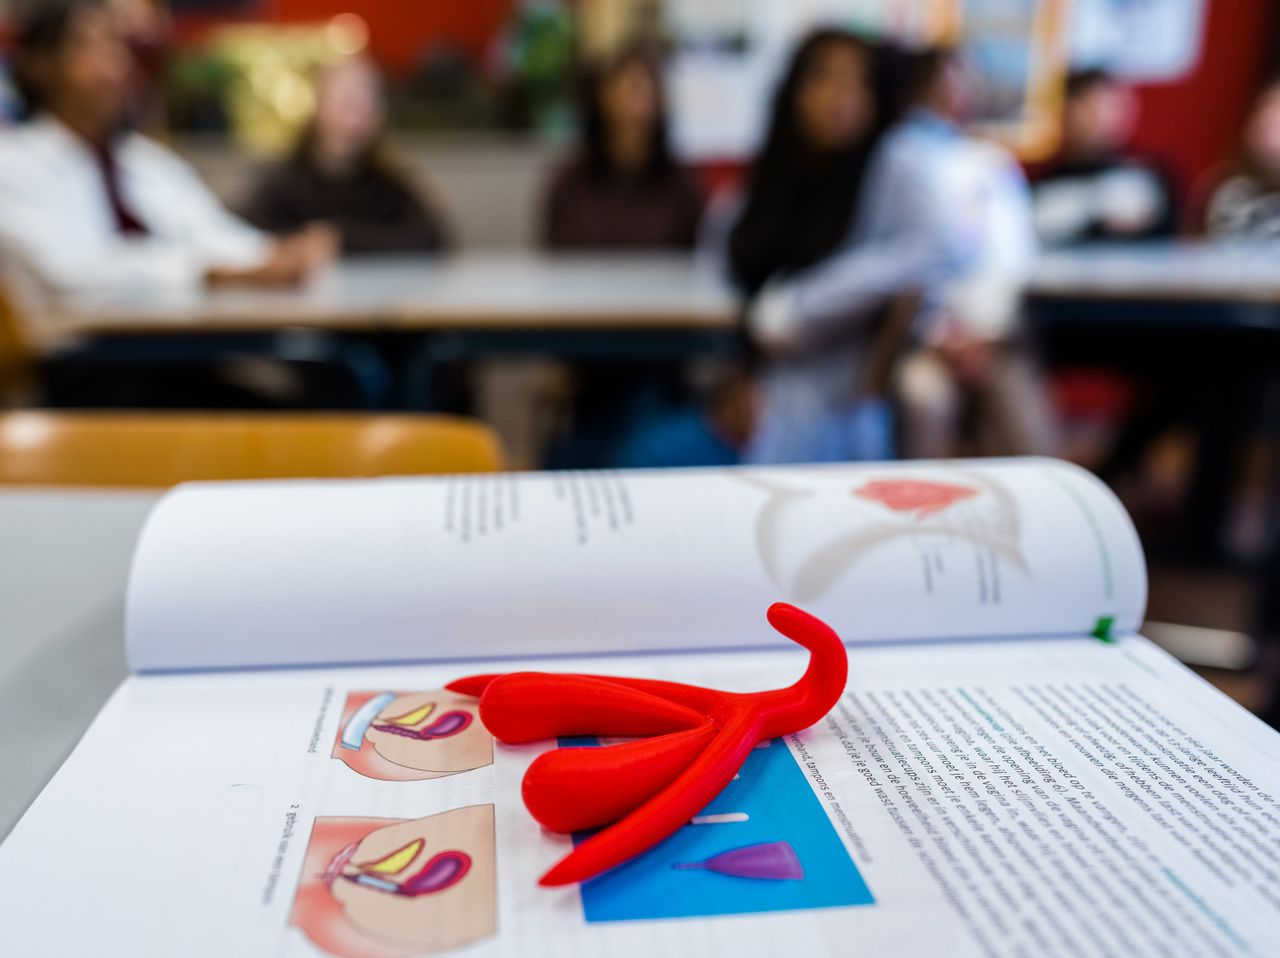 Met behulp van een 3D-clitoris krijgen leerlingen van een middelbare school in Nieuwerkerk een les seksuele vorming over het vrouwelijke geslachtsorgaan. De les is een initiatief van Expertisecentrum Seksualiteit Rutgers.